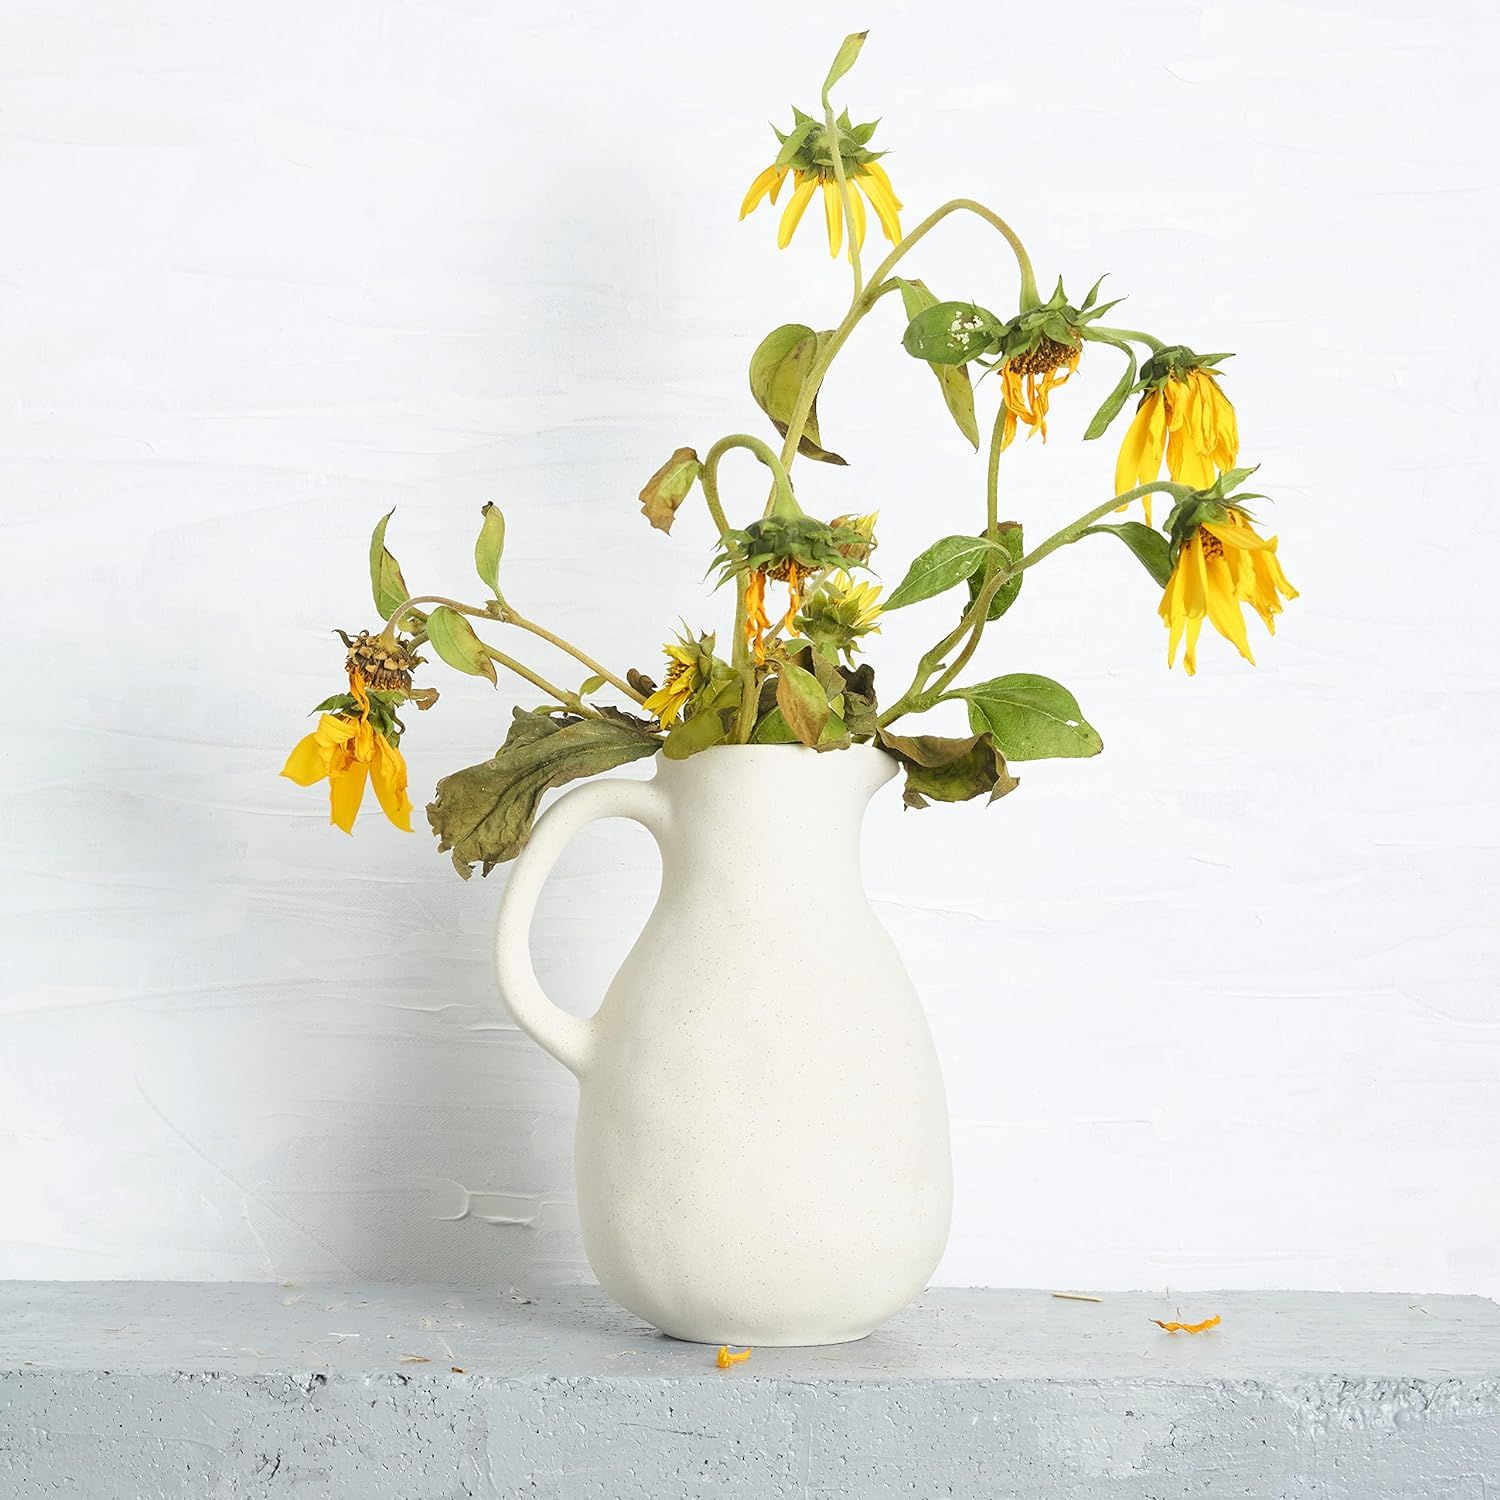 Neutral White Ceramic Vase for Wabi Sabi Home Décor, Medium Antique Stoneware Jug for Rustic Cen... | Amazon (US)